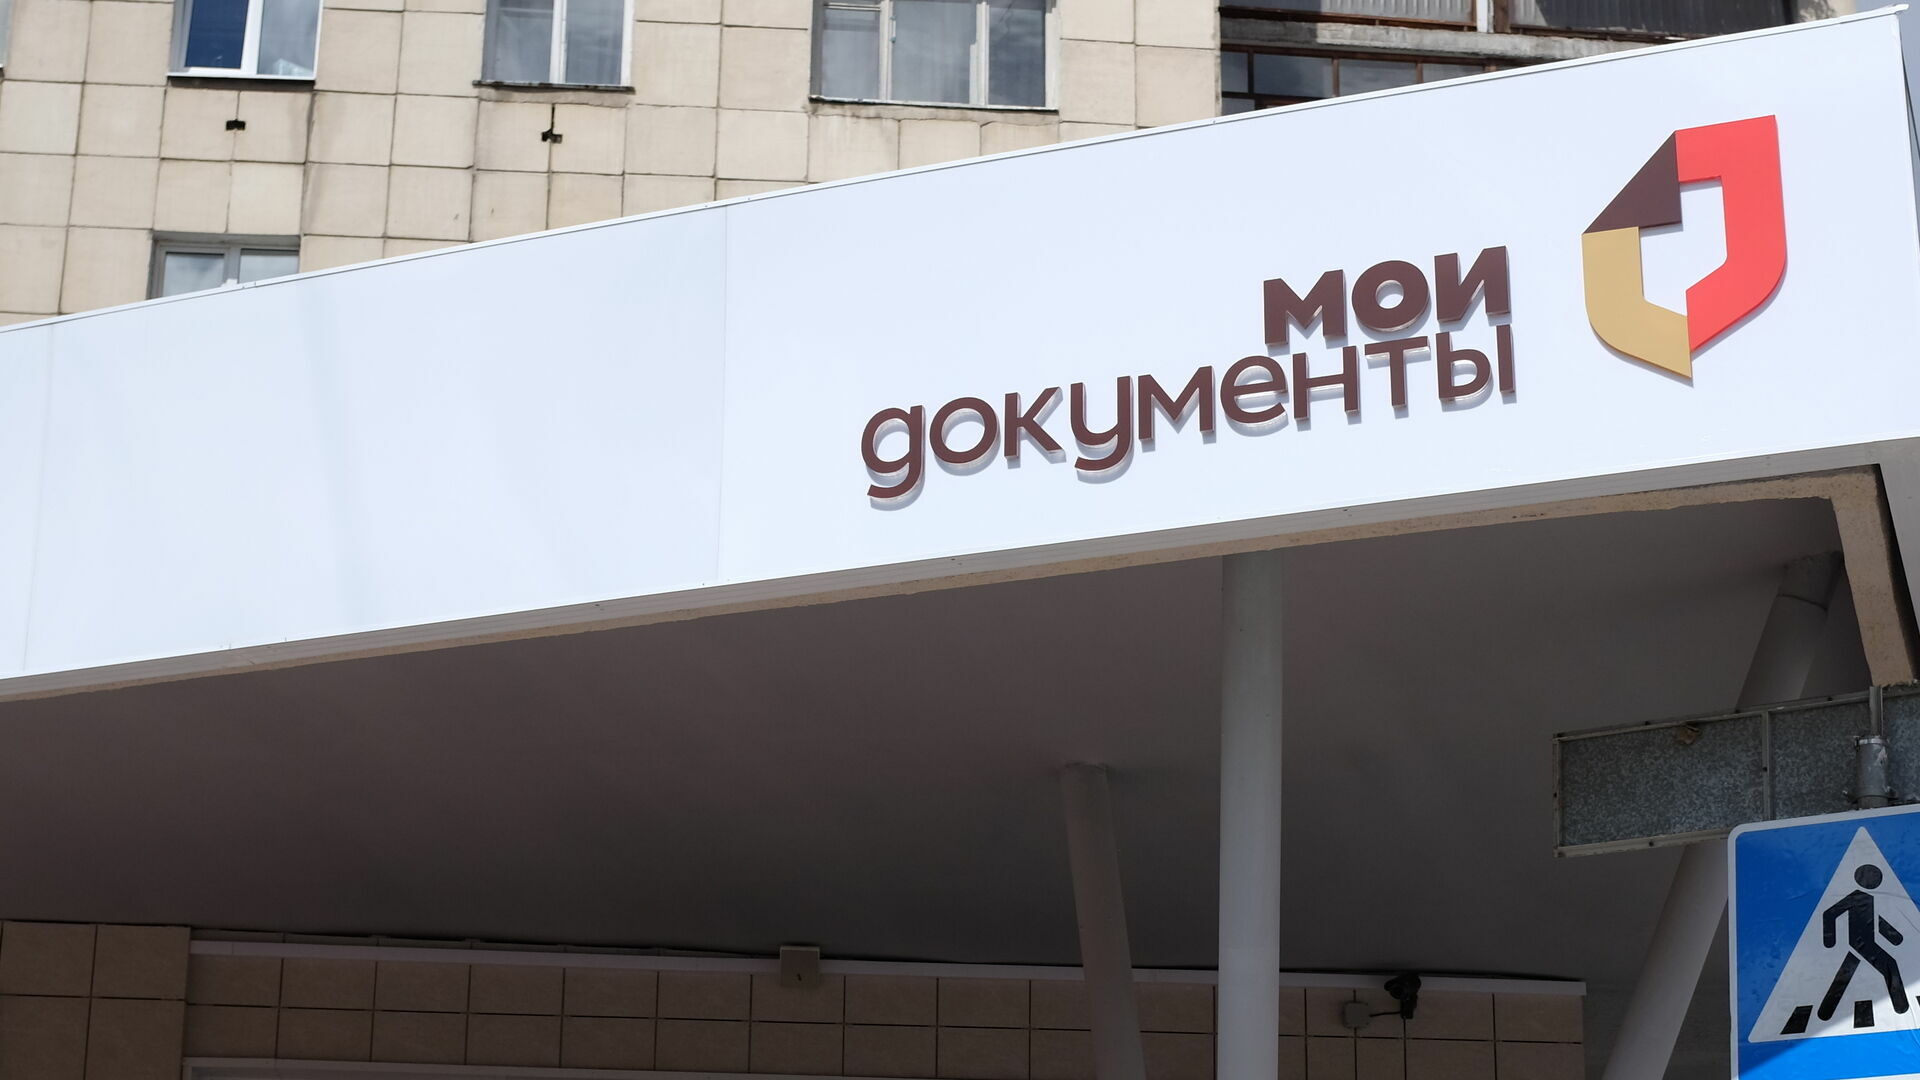 МФЦ откроет «окна» для юрлиц в банках и торговых центрах Перми